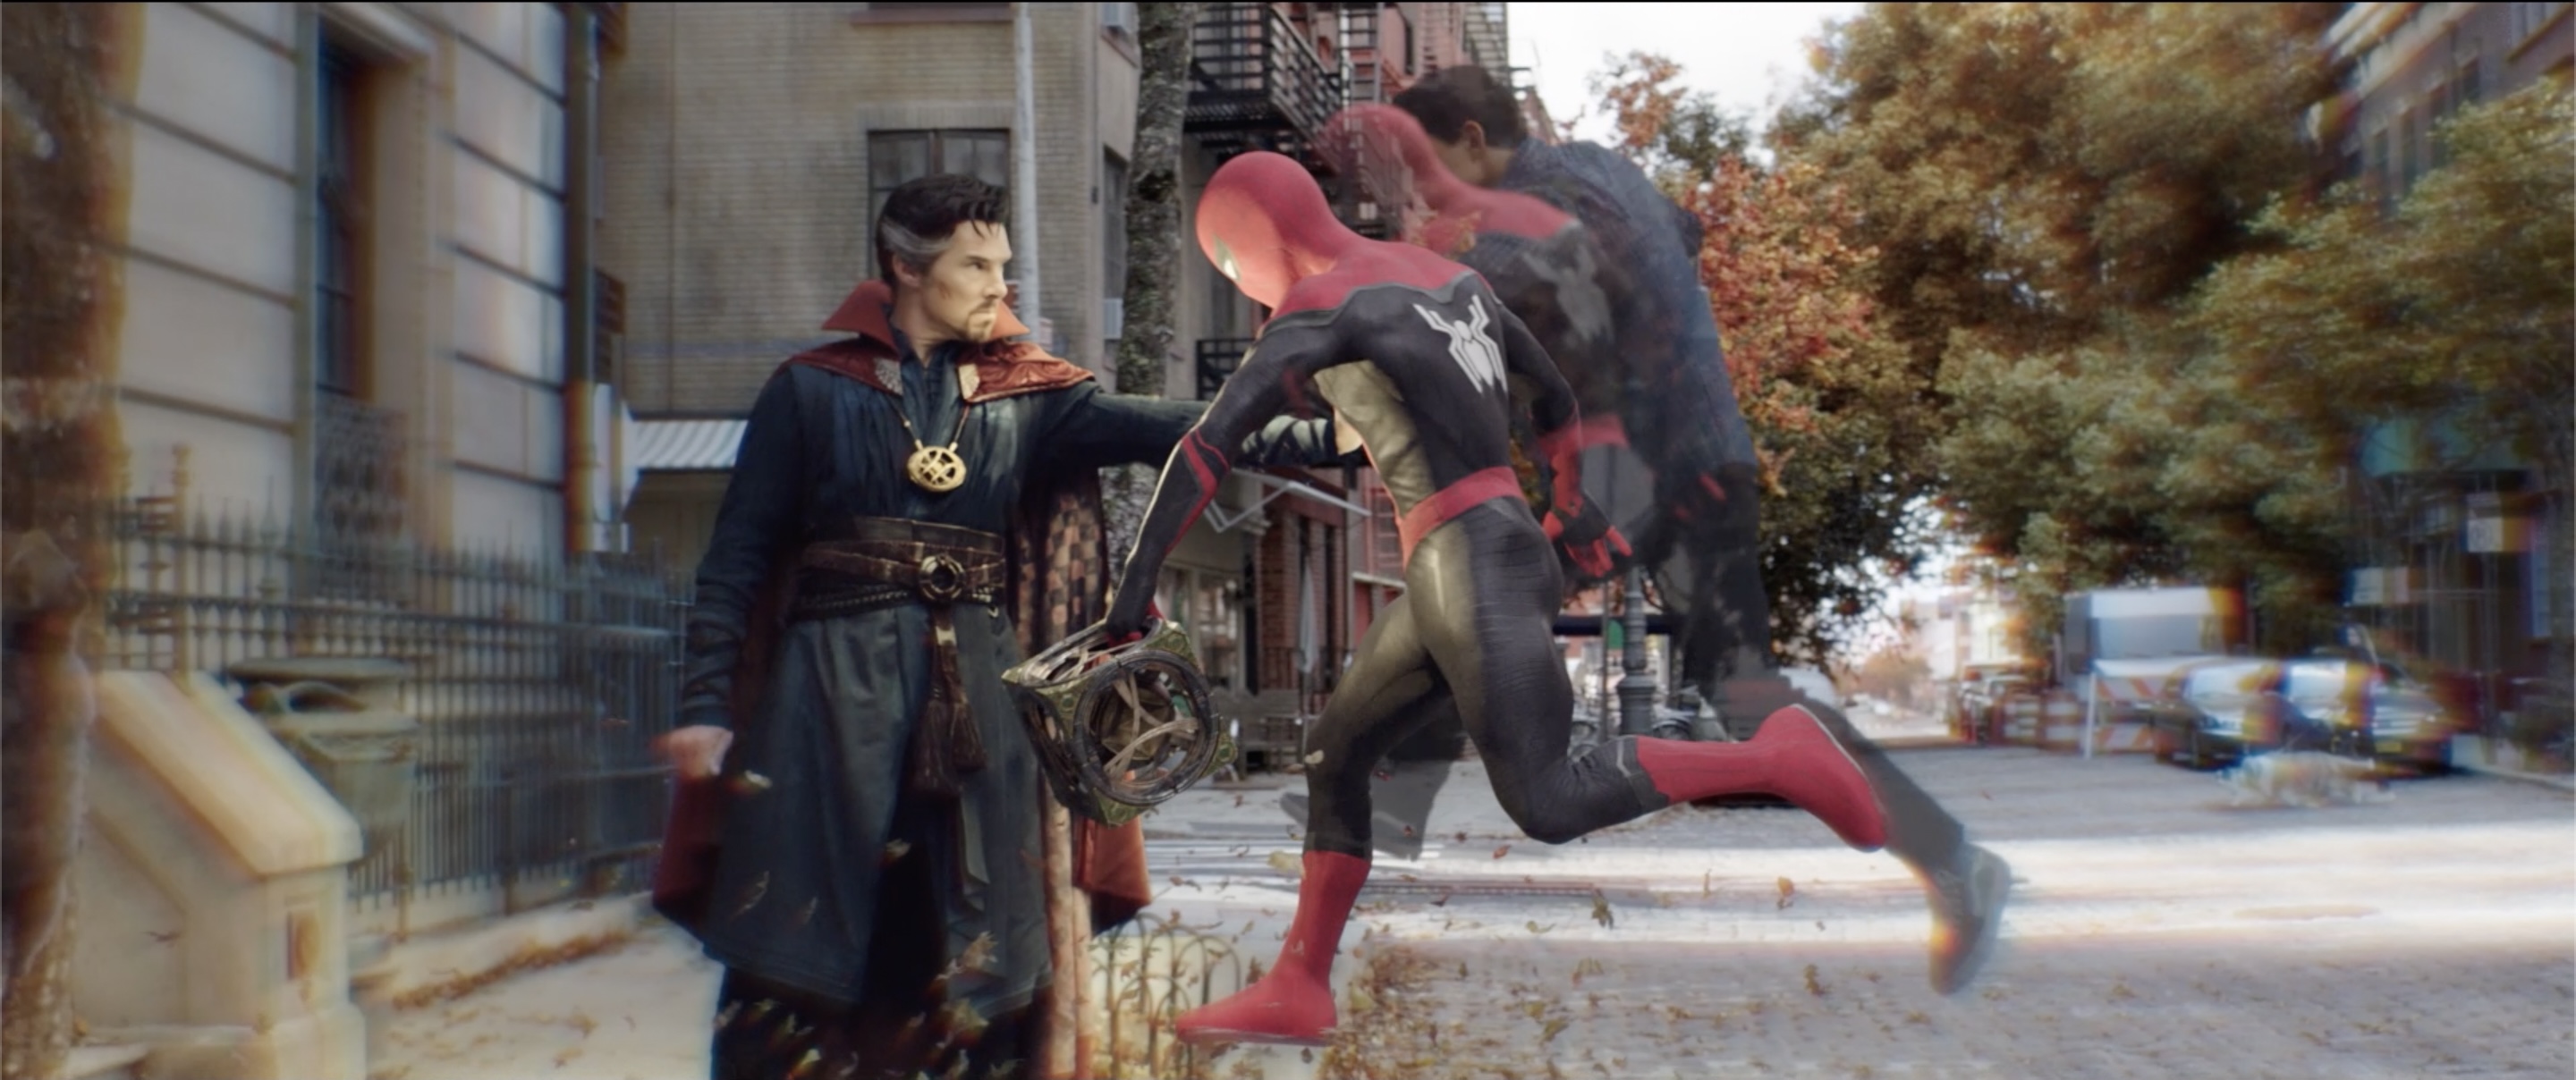 Hàng loạt ác nhân cũ tái xuất báo hiệu trận chiến khốc liệt của 'Spider-Man: No Way Home' - ảnh 5